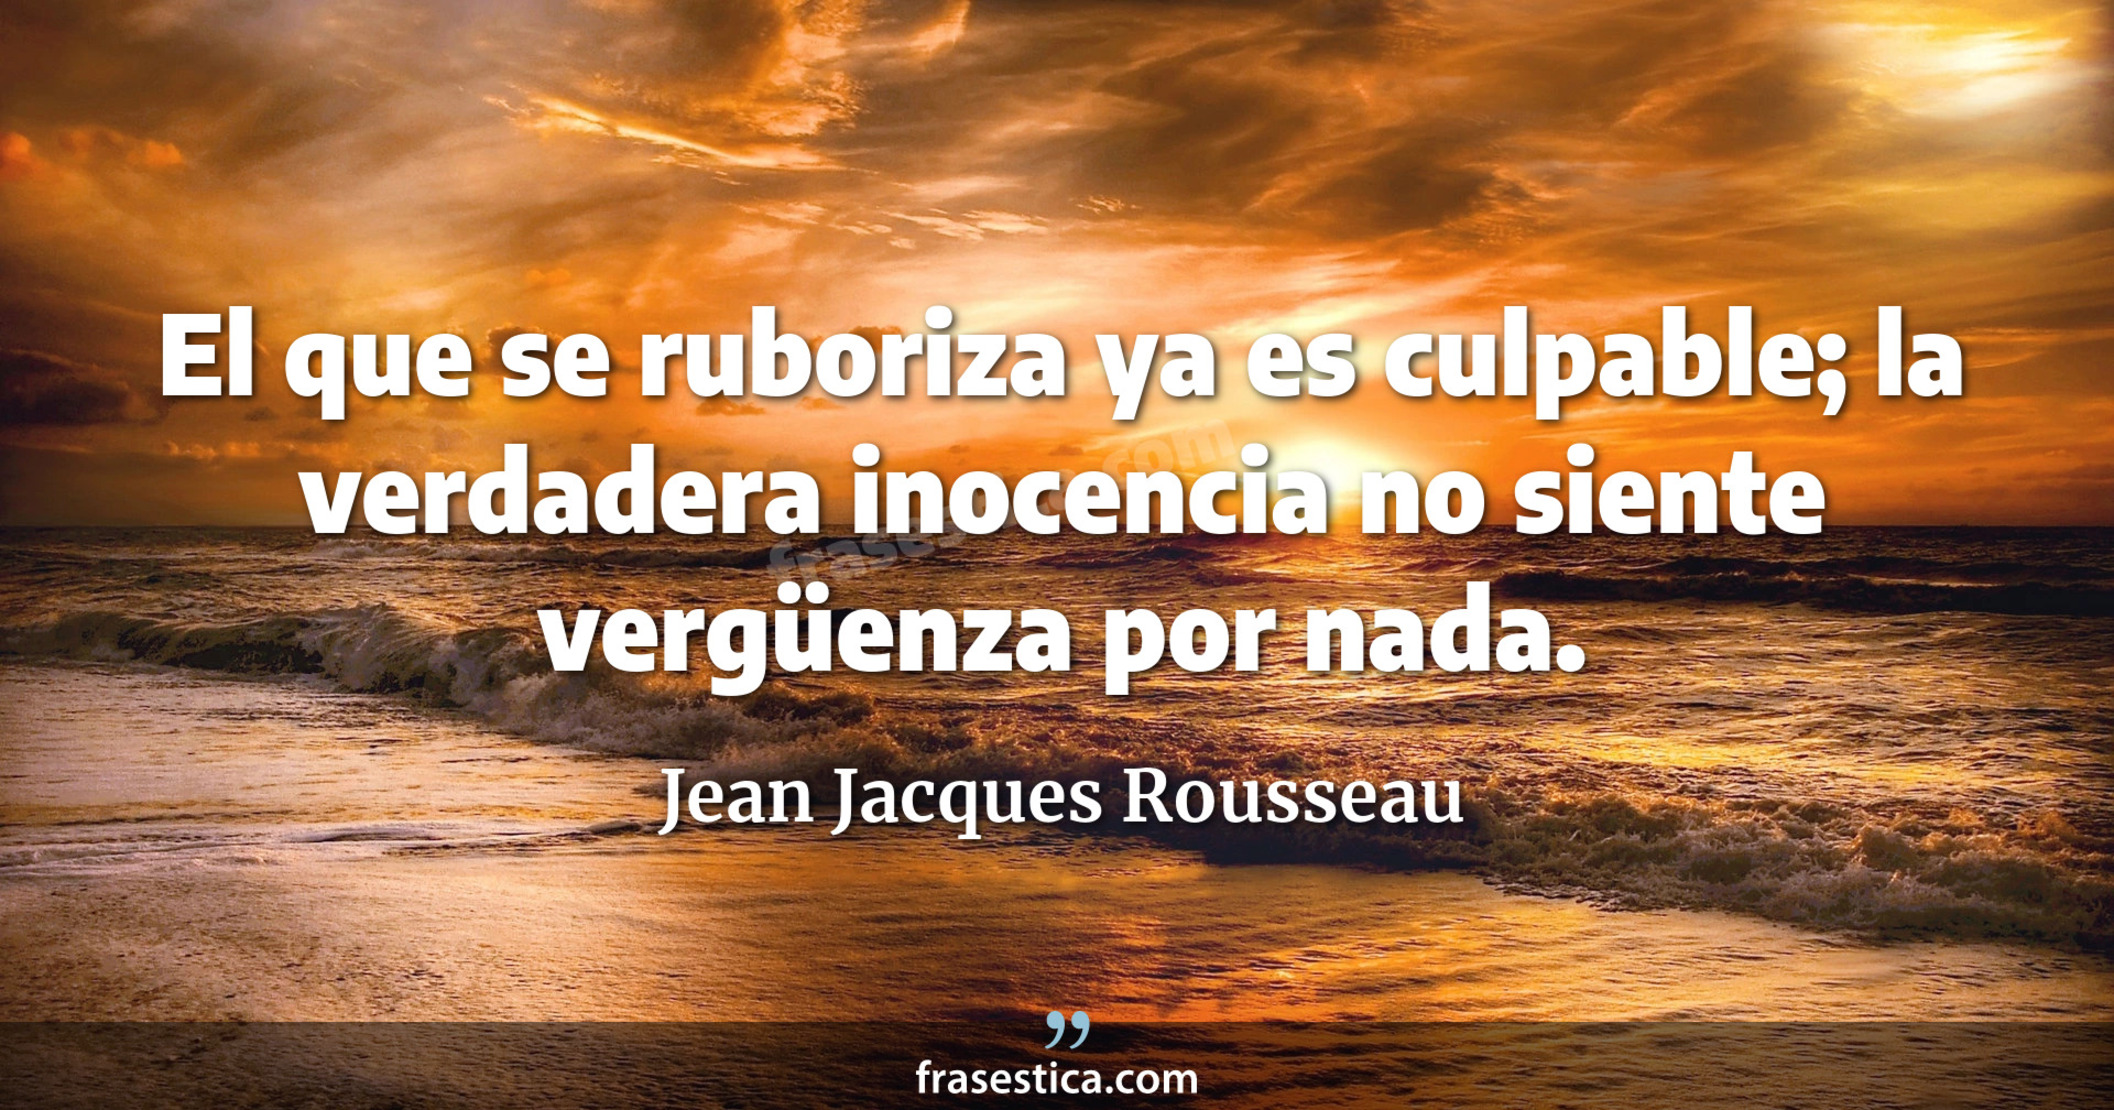 El que se ruboriza ya es culpable; la verdadera inocencia no siente vergüenza por nada. - Jean Jacques Rousseau